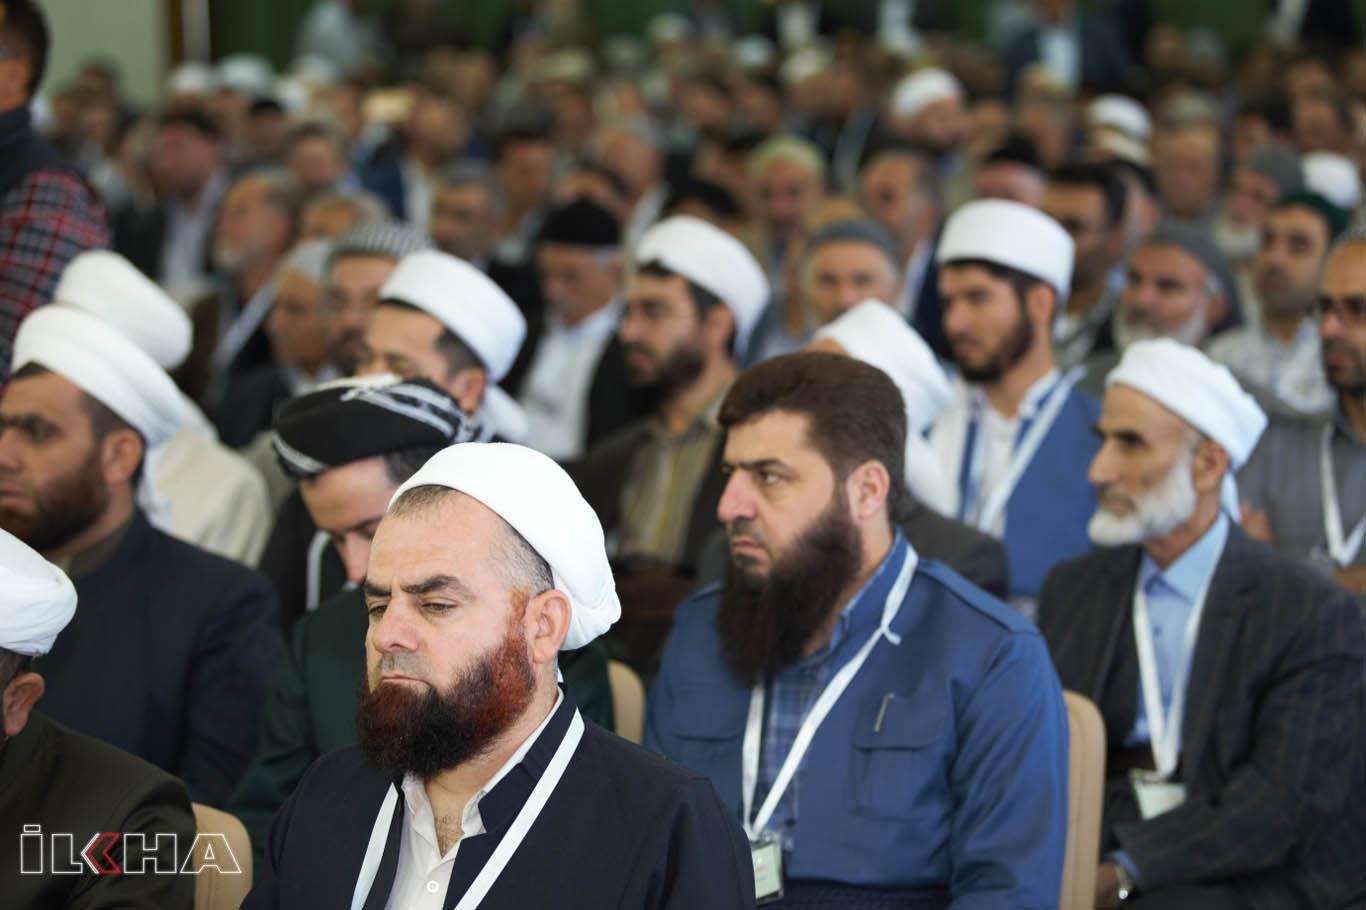 اتحاد العلماء والمدارس الإسلامية بتركيا ينظم الملتقى الخامس للعلماء